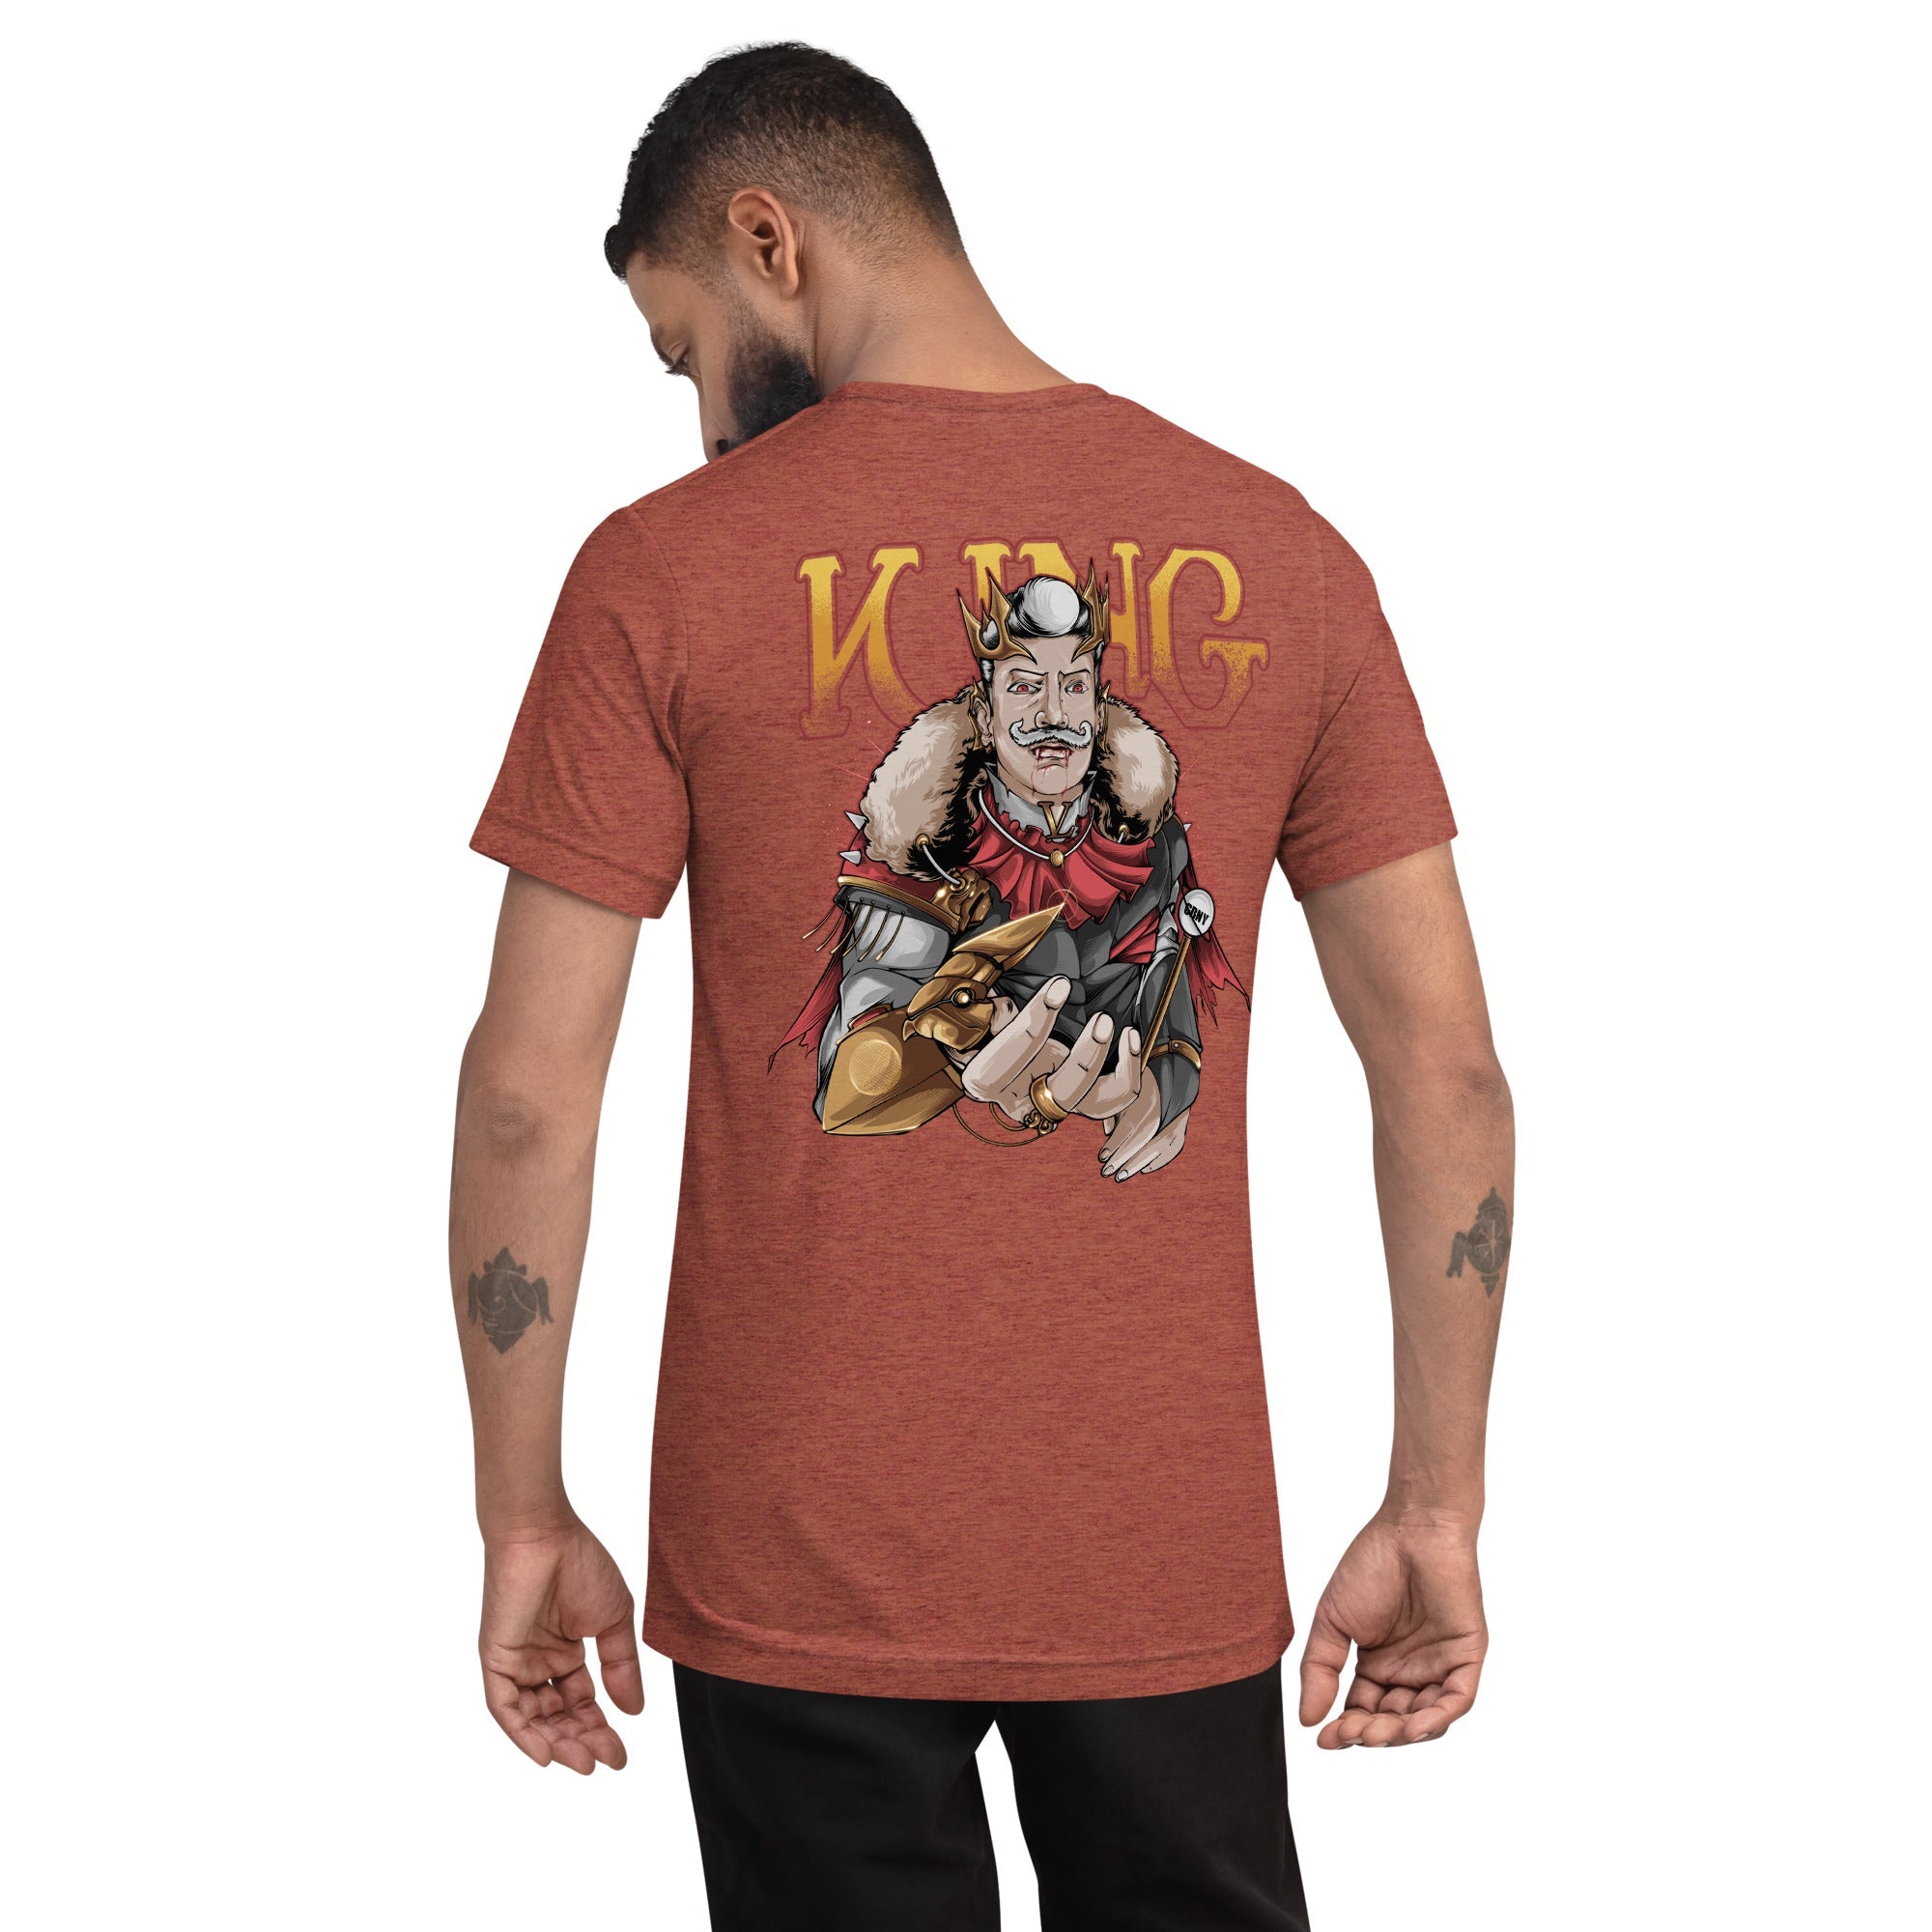 GBNY Clay Triblend / XS Vamp Life X GBNY "Vamp King" T-shirt - Men's 8741511_6512